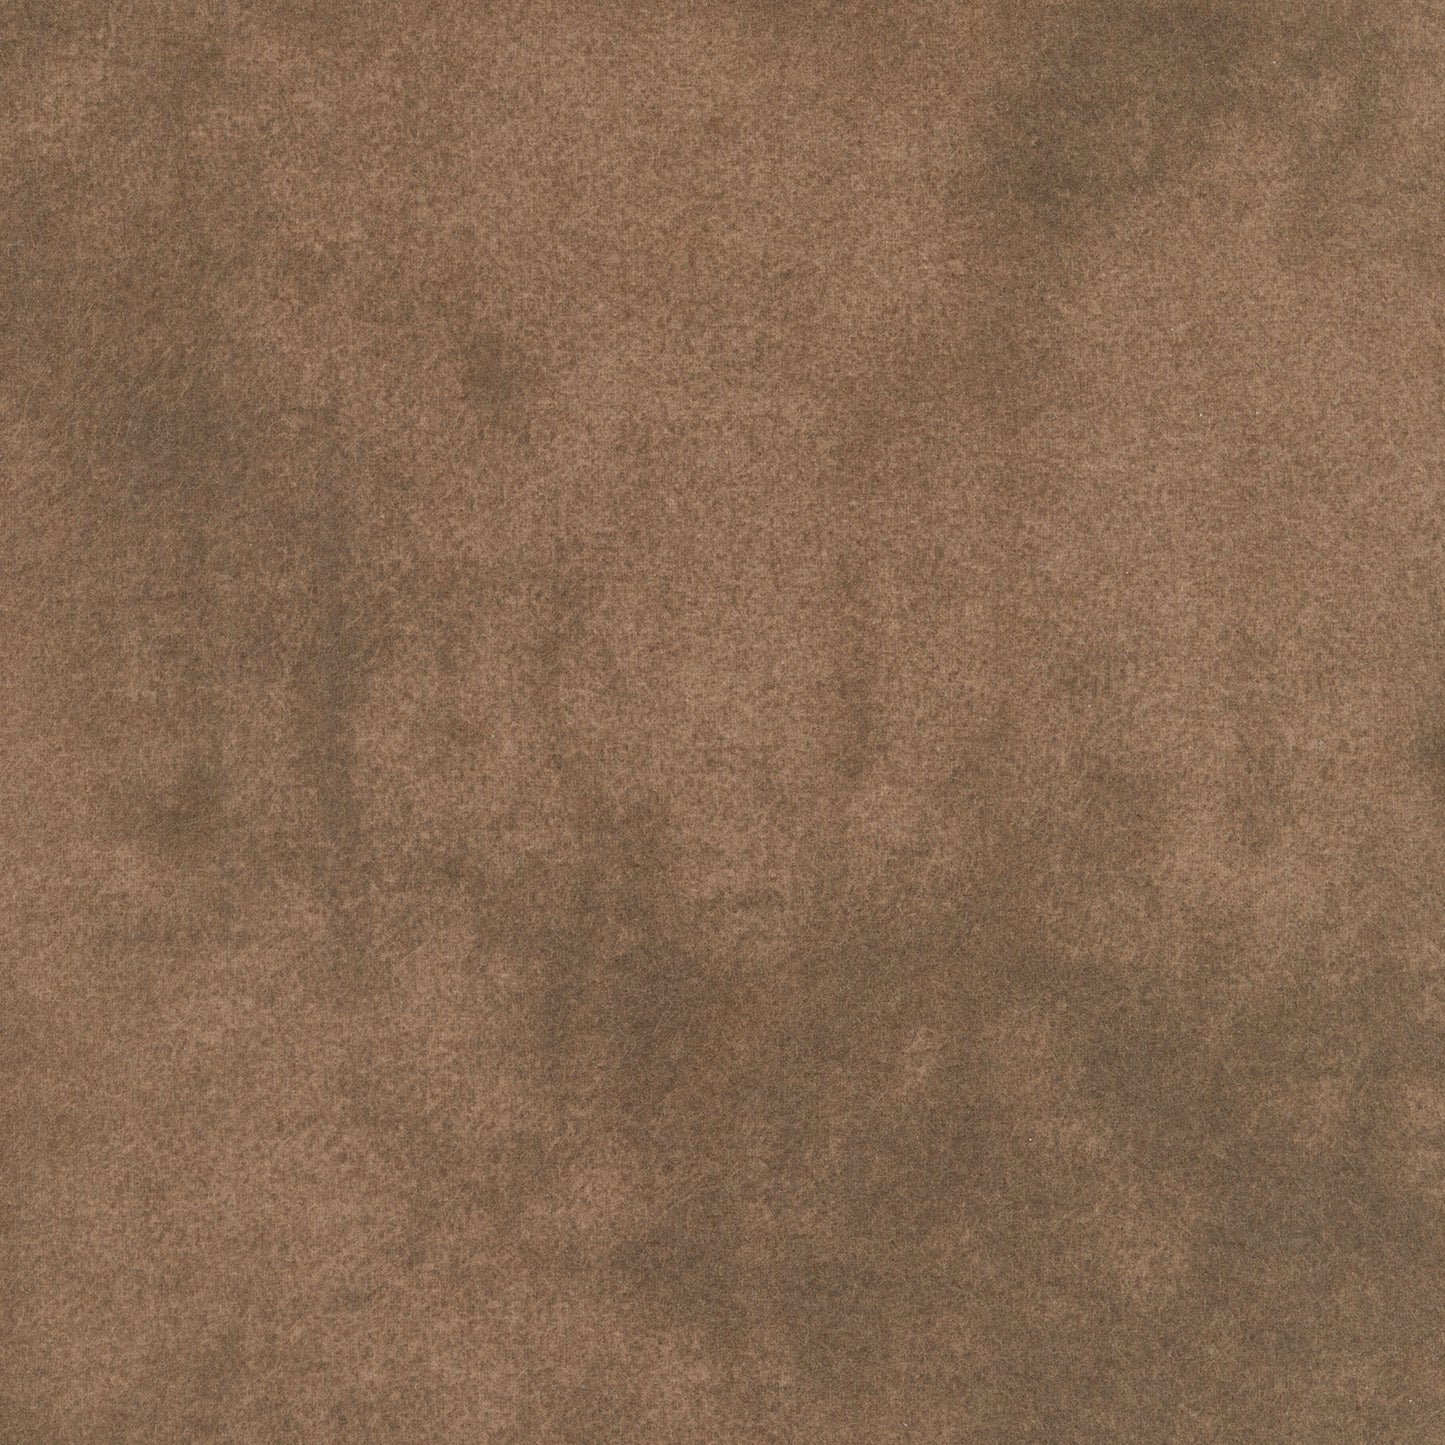 Woolies Flannel - Colorwash - Medium Brown Yardage Primary Image